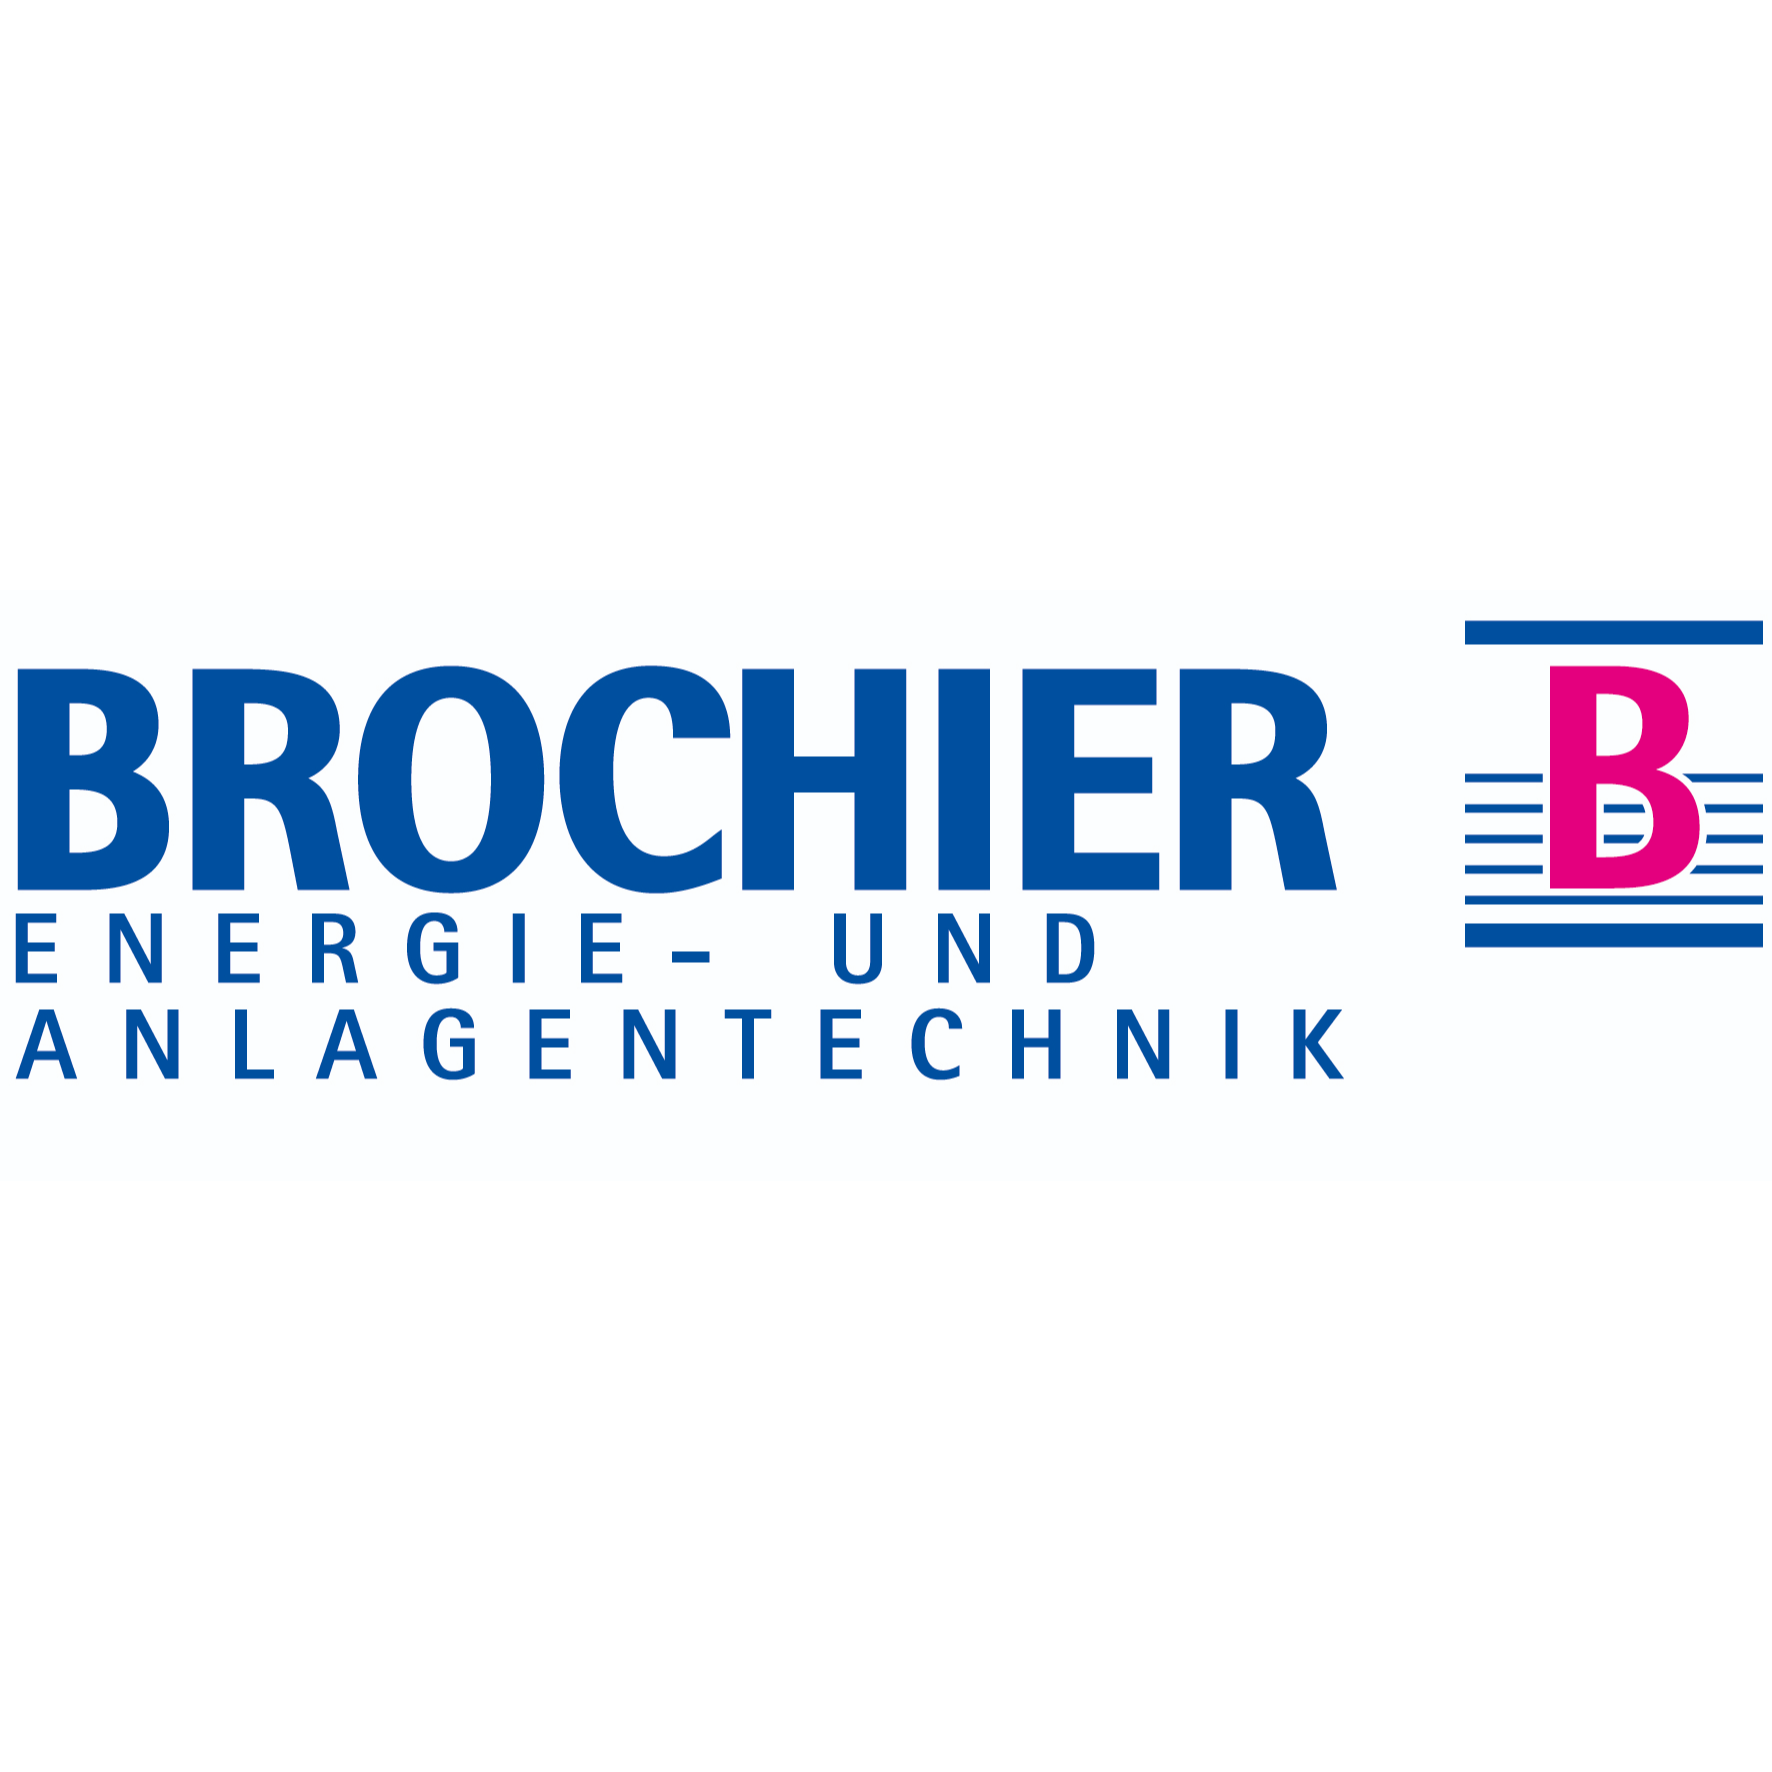 BROCHIER Energie- und Anlagentechnik GmbH in Nürnberg - Logo